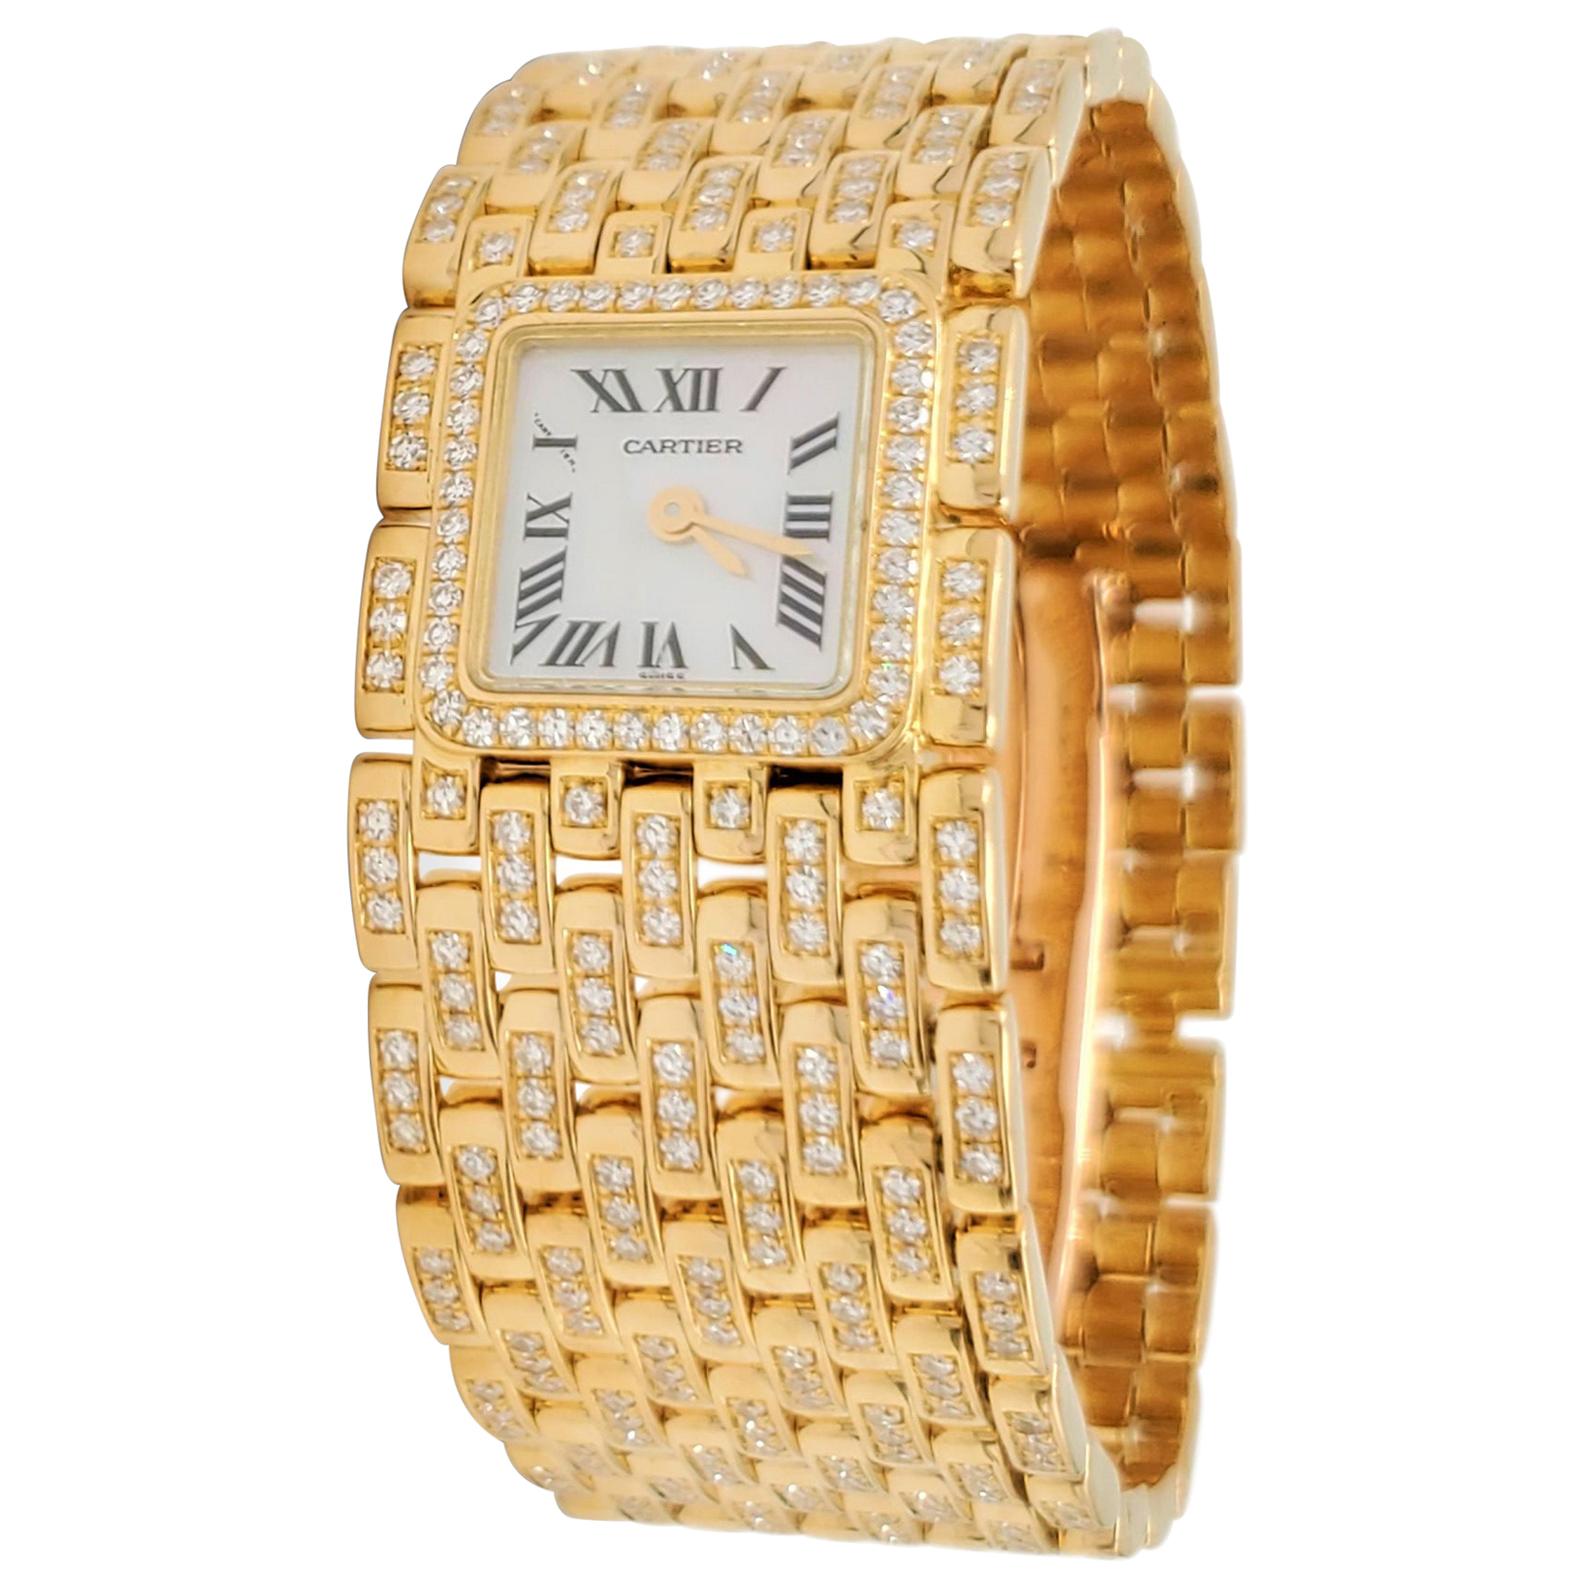 Cartier Panthere Ruban Yellow Gold and Diamond Watch